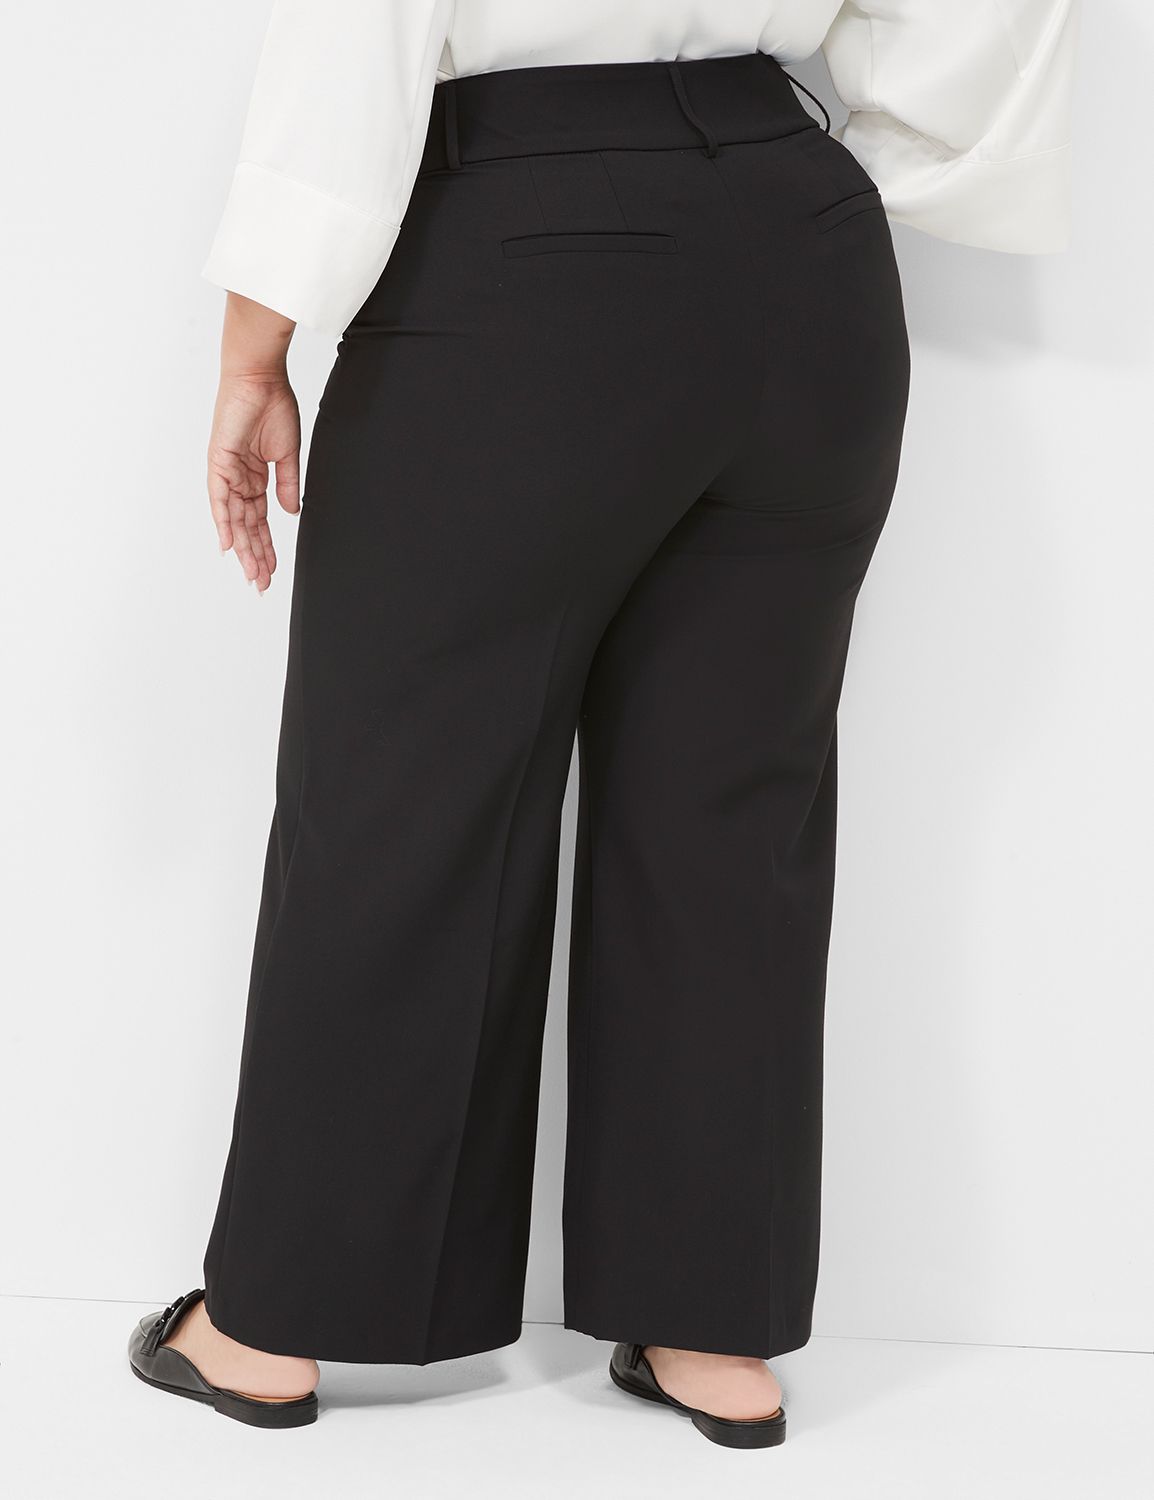 NWT Lane Bryant Long Pants Women's Size 16 TALL Style 005653